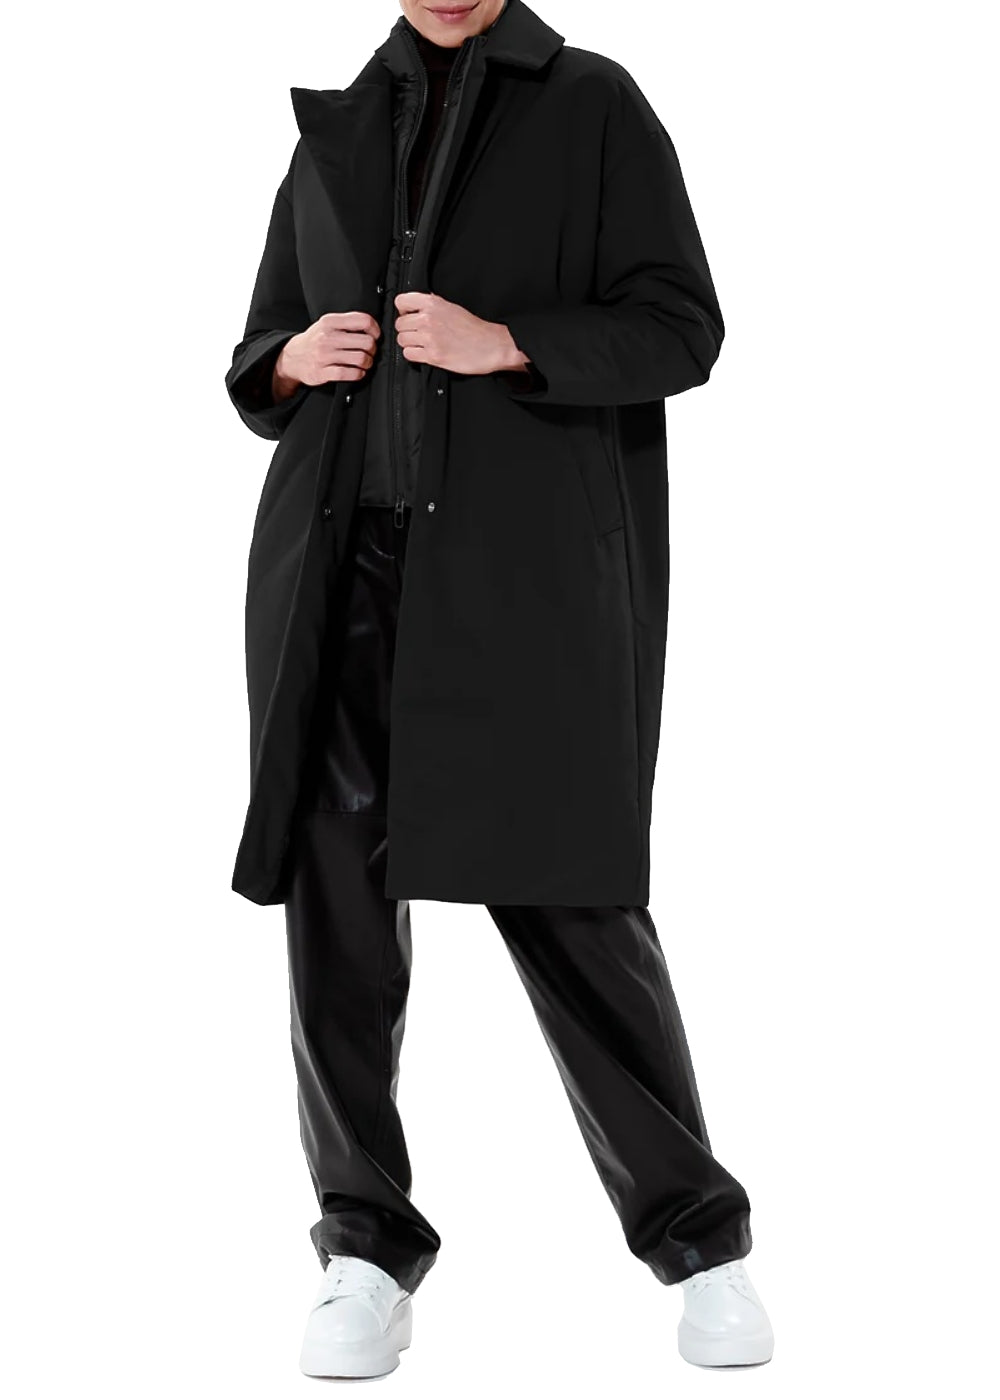 Duno Damen Mantel Glis in Saturno Ware. Kurzmantel in schwarz mit eingenähtem Steppgilet am Ausschnitt von Duno online kaufen. Damen Kurzmantel in leichter Technoware mit hochwertiger Verarbeitung aus der neuen Duno Kollektion.